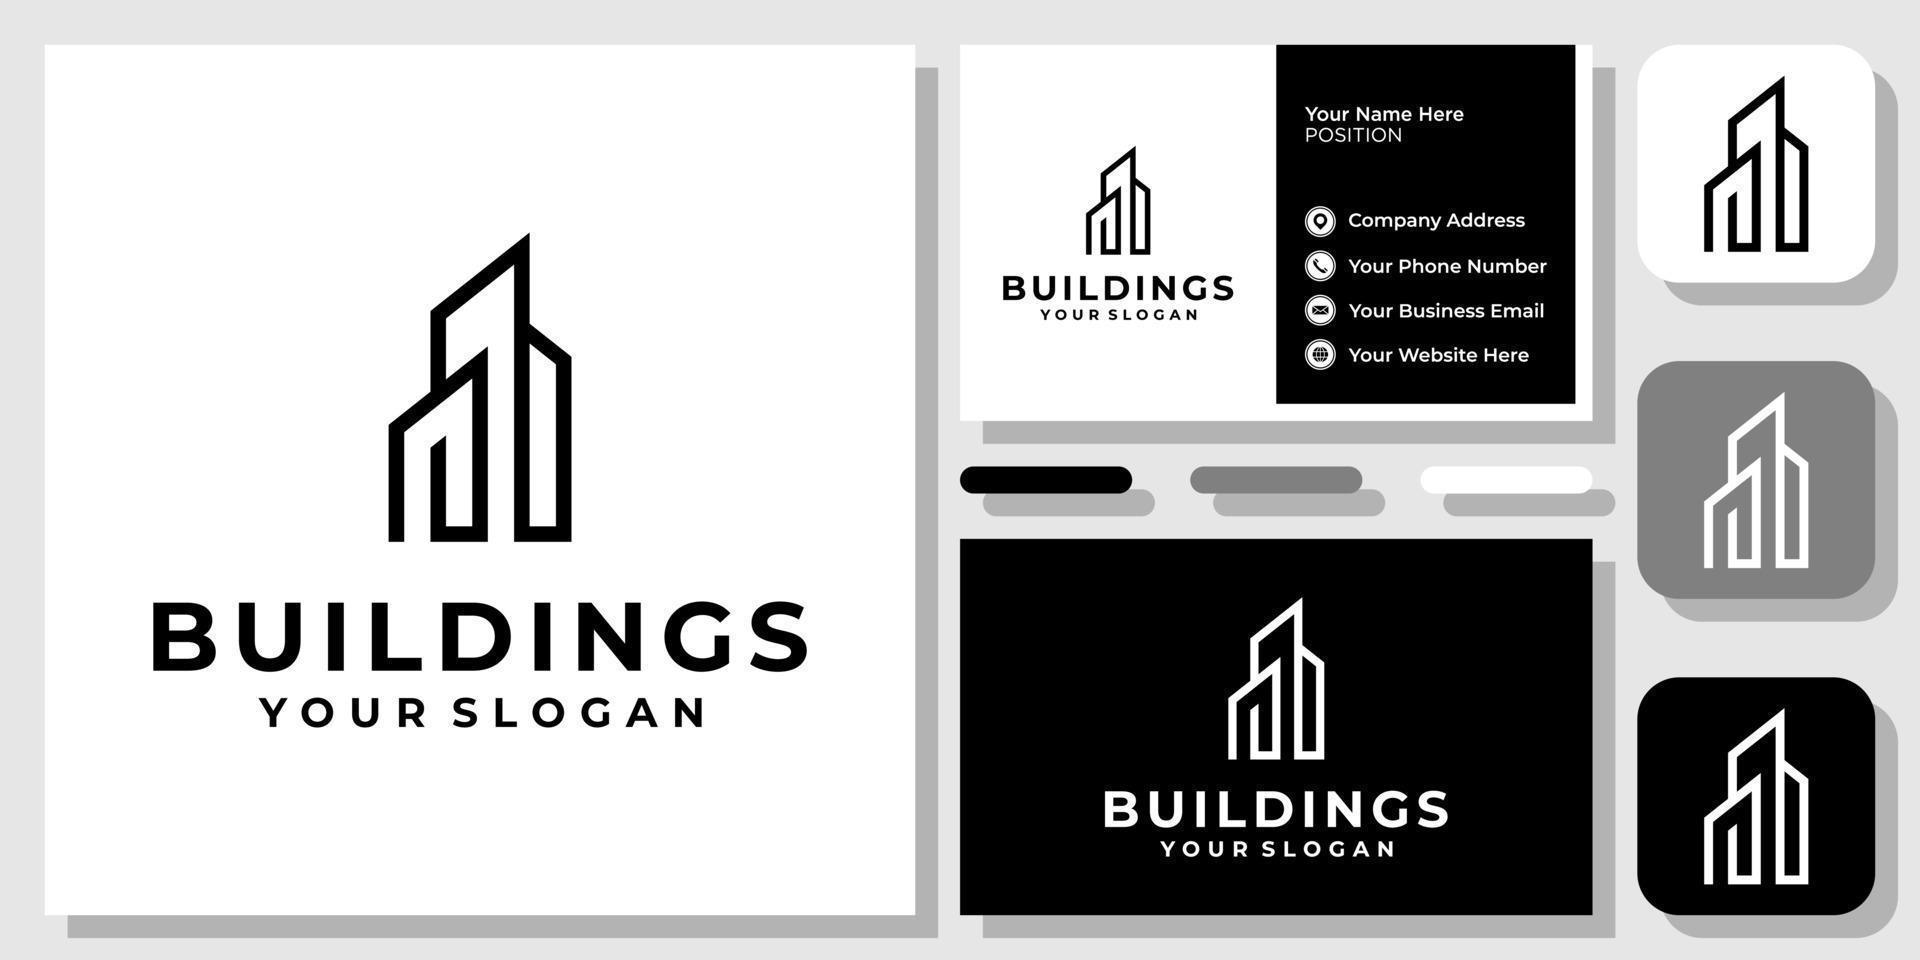 eenvoudige gebouwen appartement architectuur stad stad abstract logo-ontwerp met sjabloon voor visitekaartjes vector